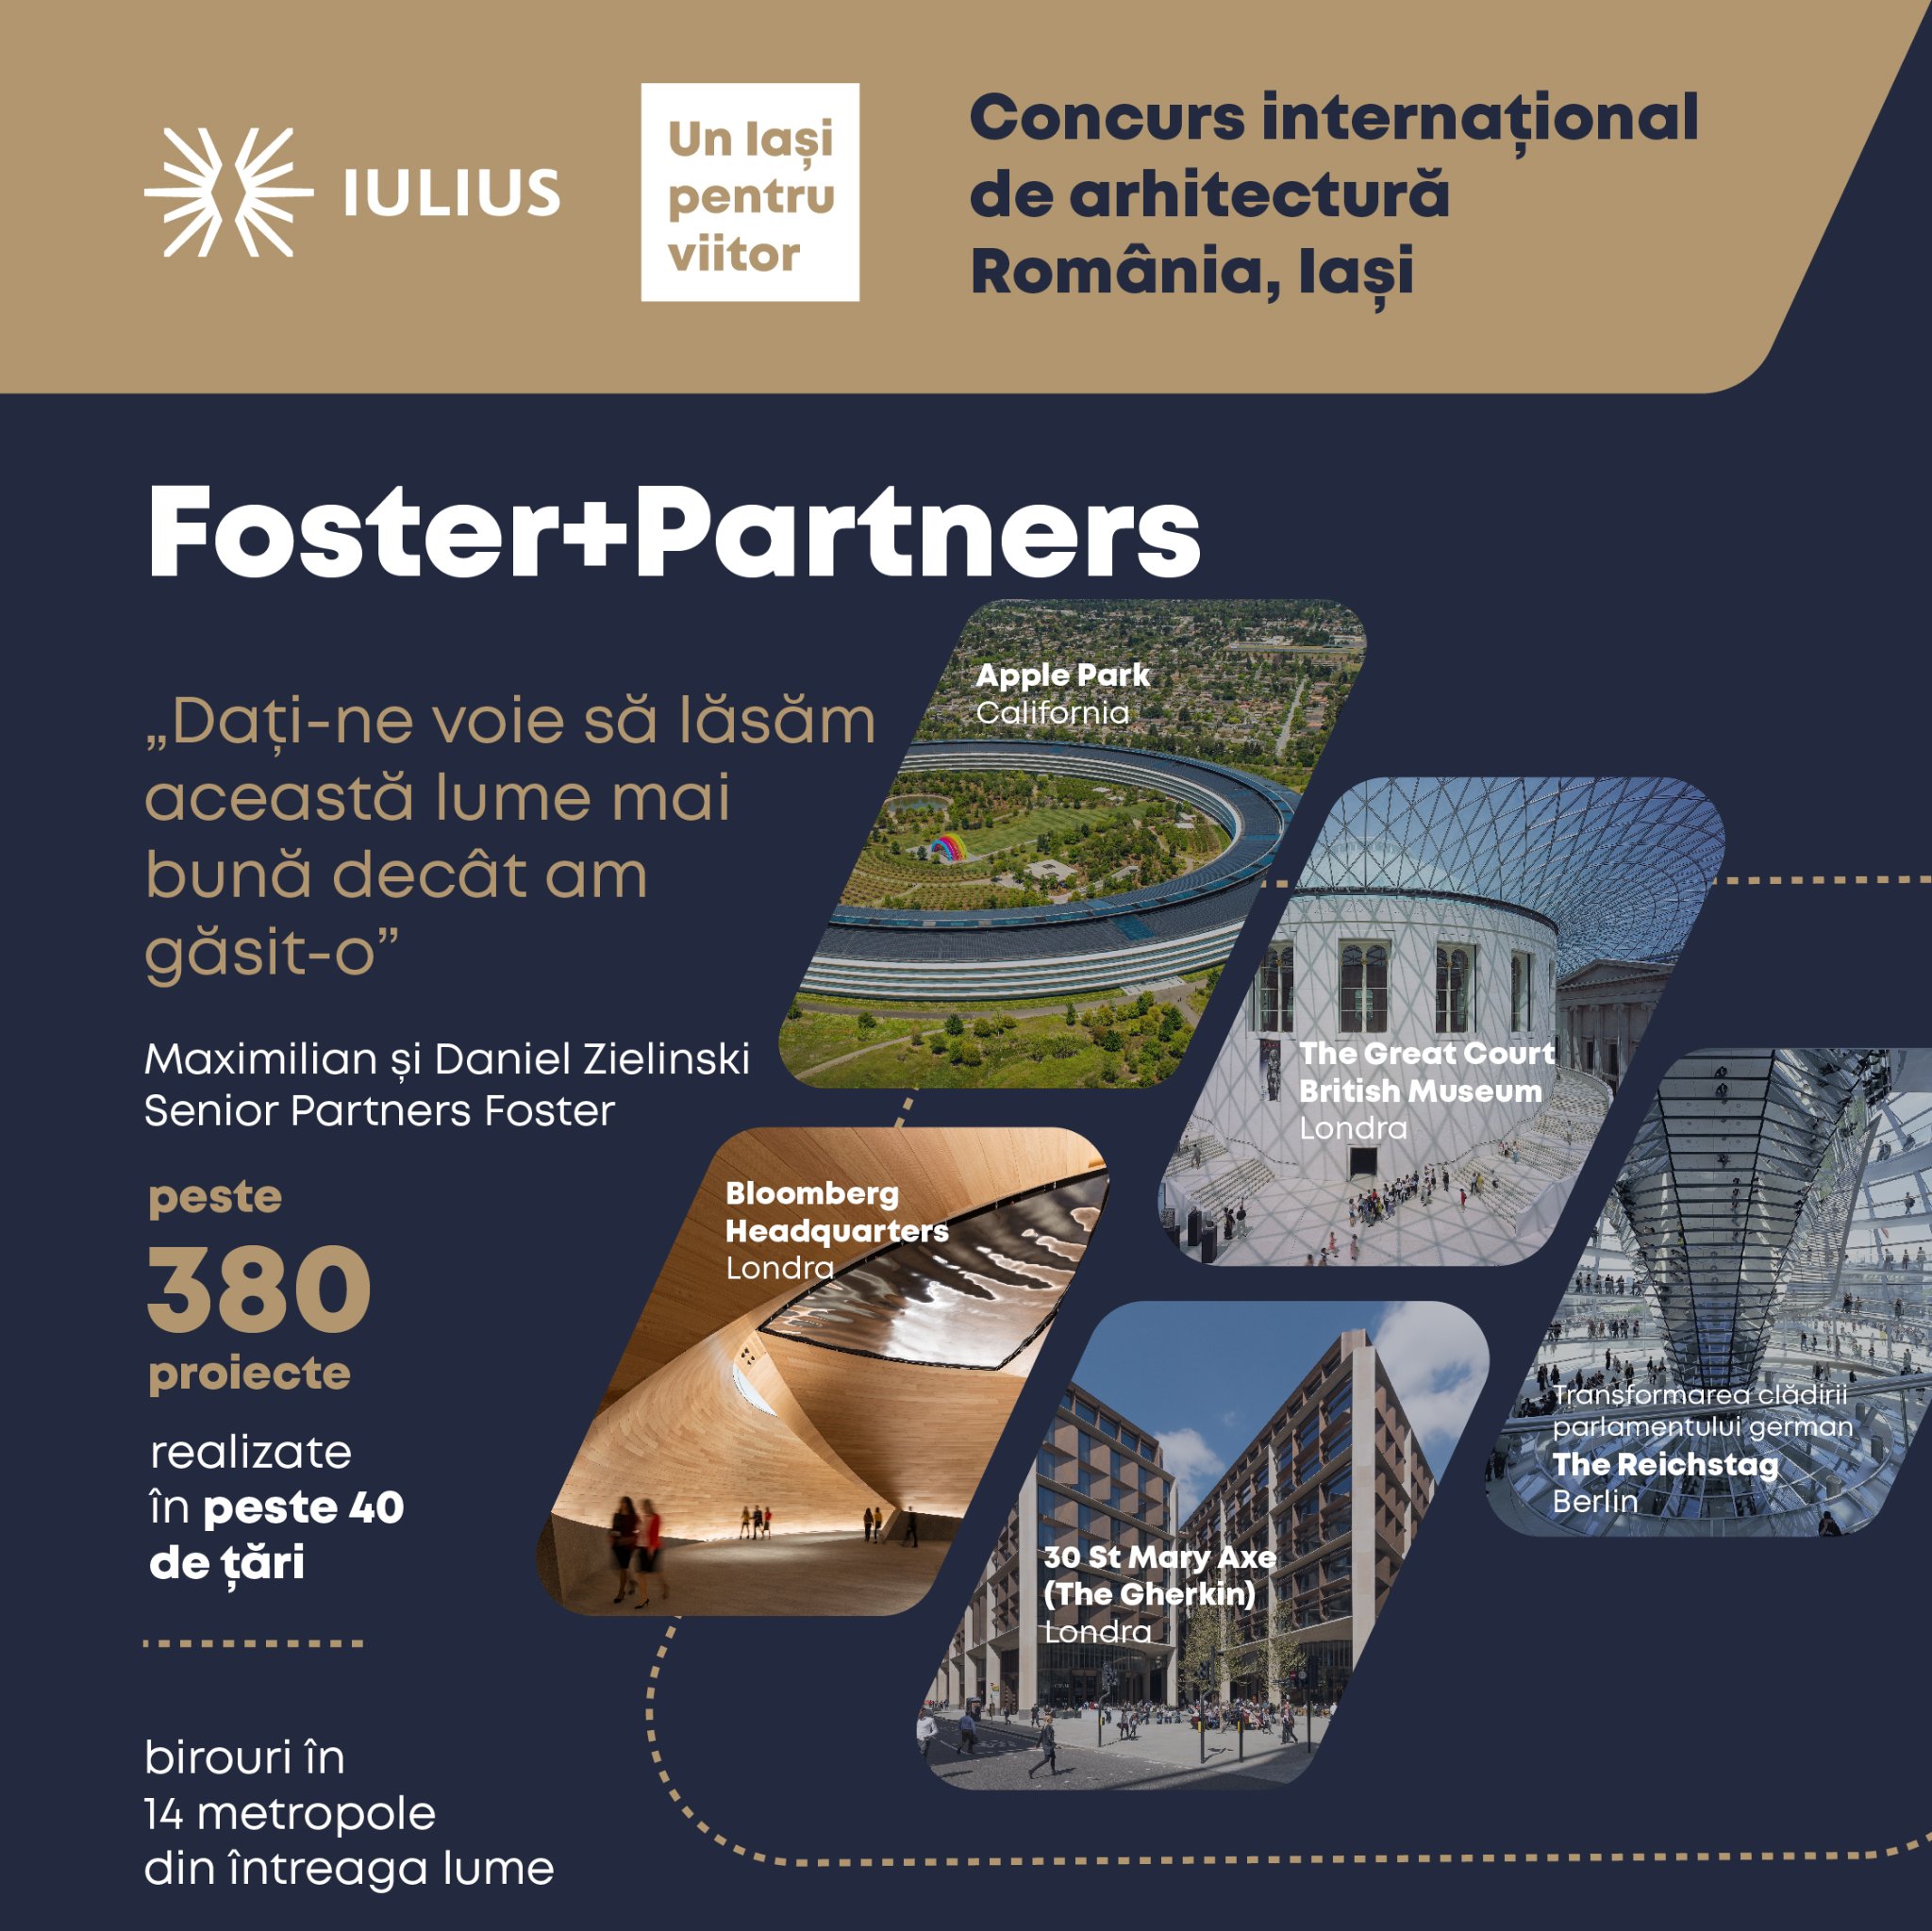 Video - Foster+Partners la concursul internațional de arhitectură organizat de Iulius, la Iași